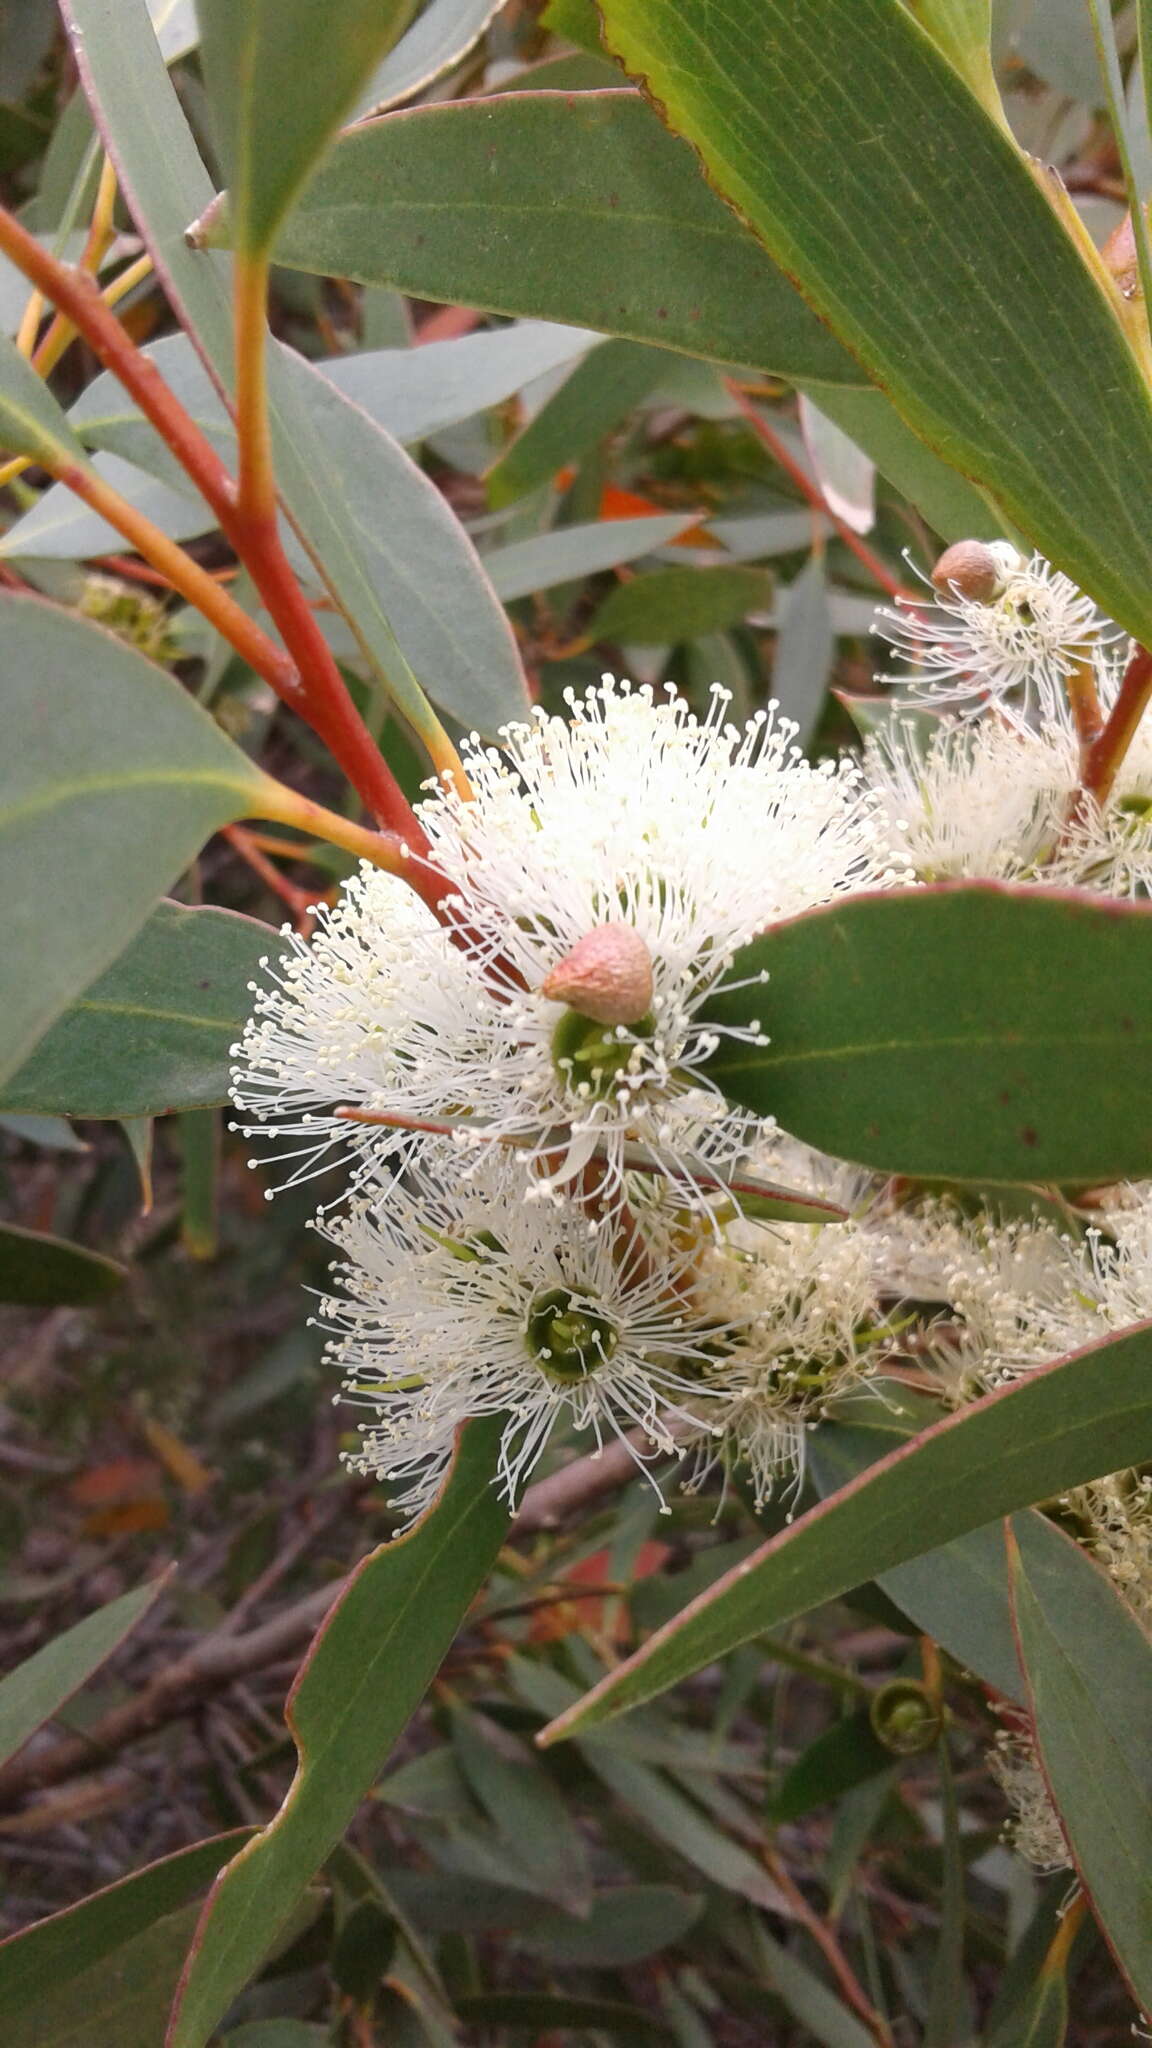 Image of Eucalyptus diversifolia subsp. diversifolia